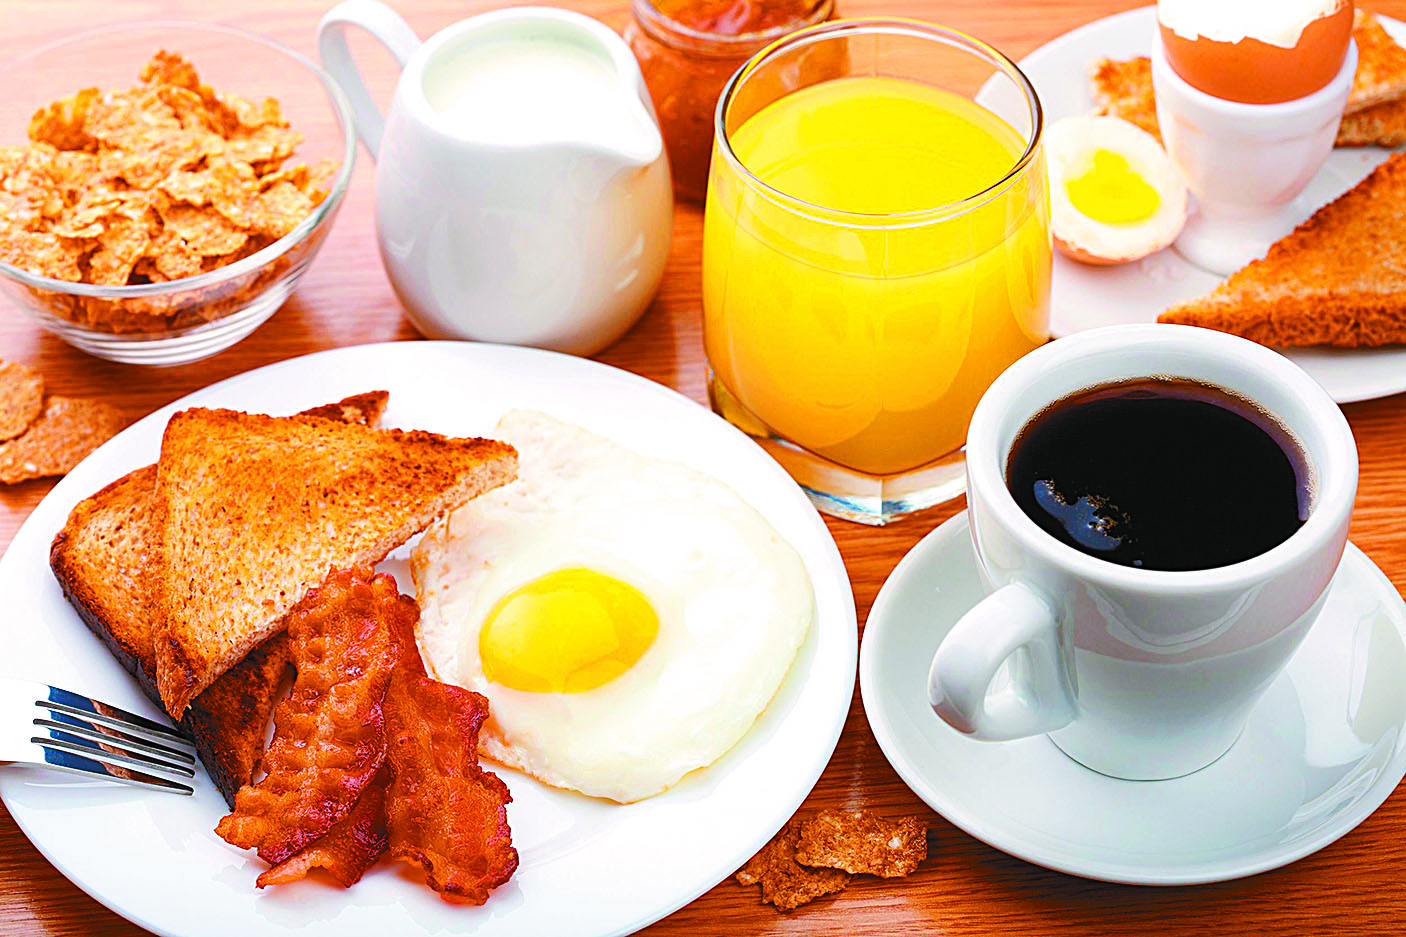 Saltar el desayuno a tempranas horas es nocivo para la salud